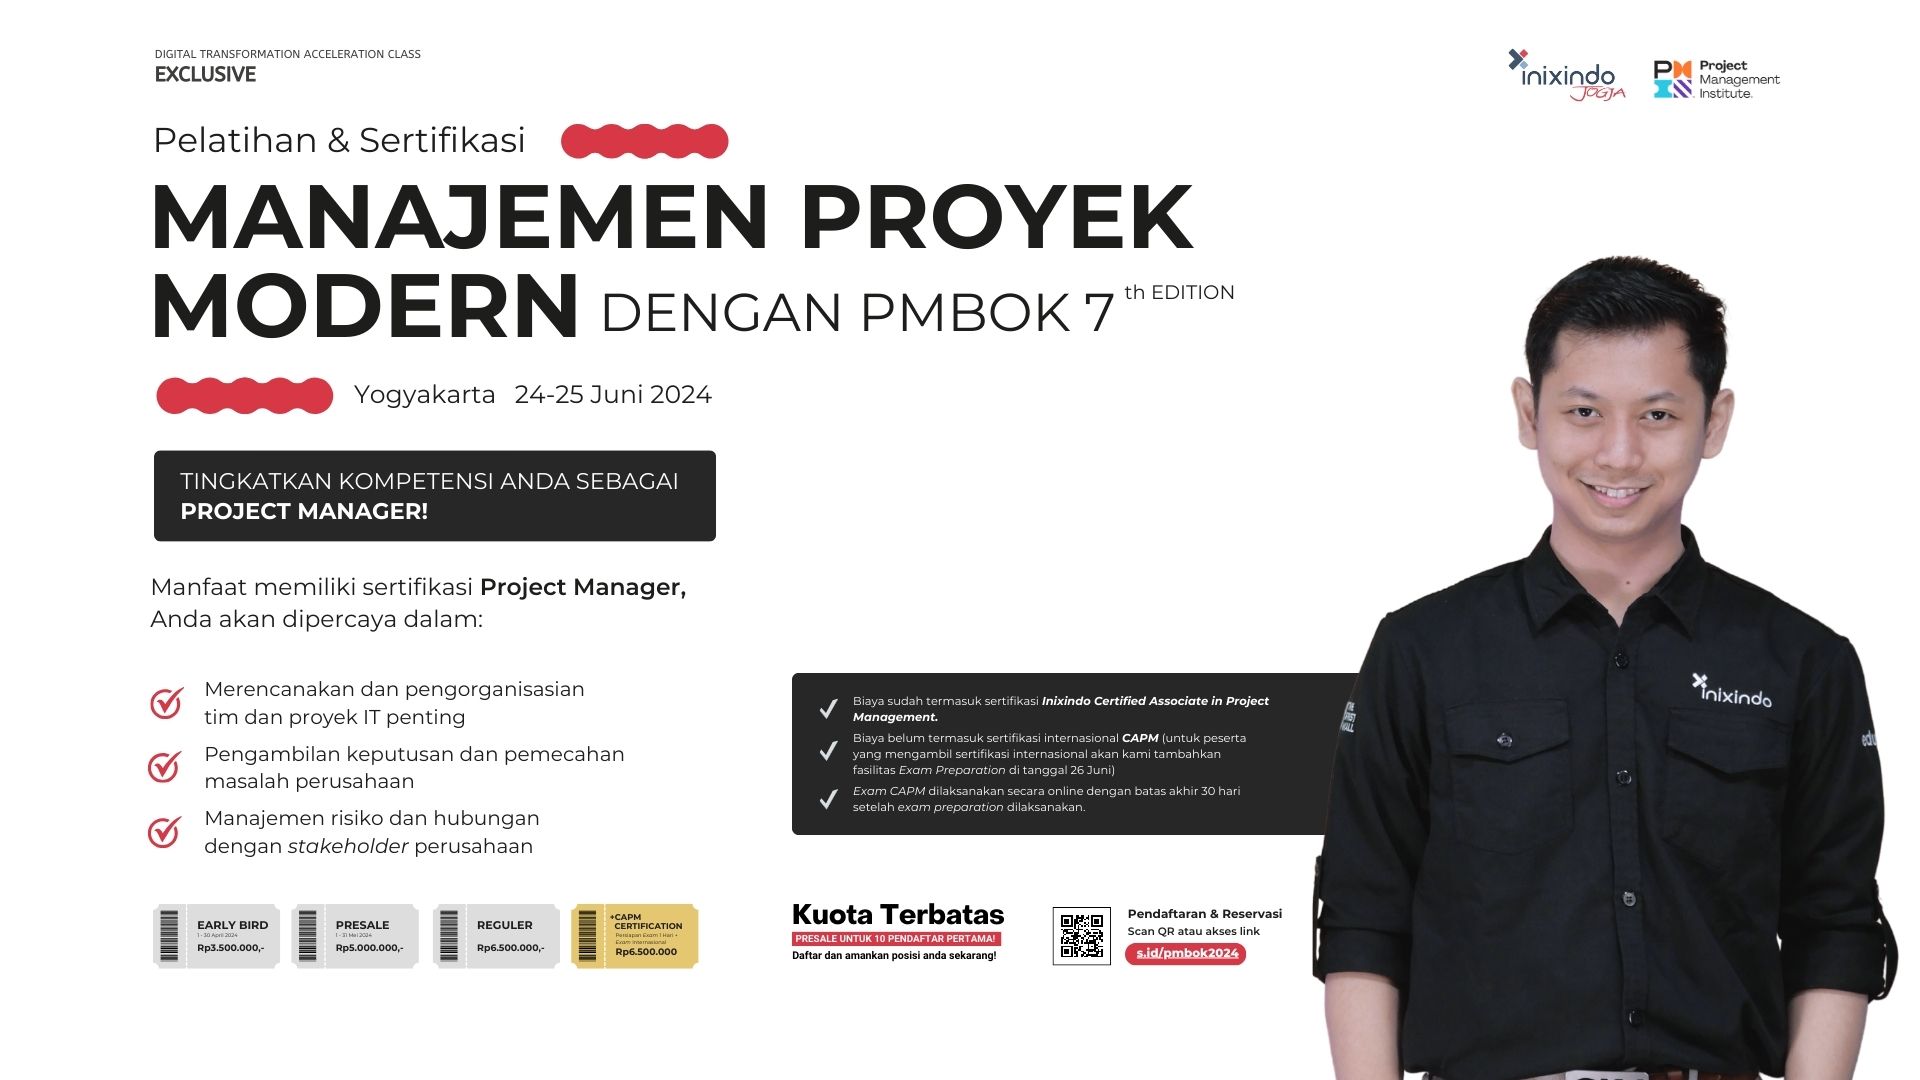 Manajemen Proyek Modern dengan PMBOK 7th Edition 7